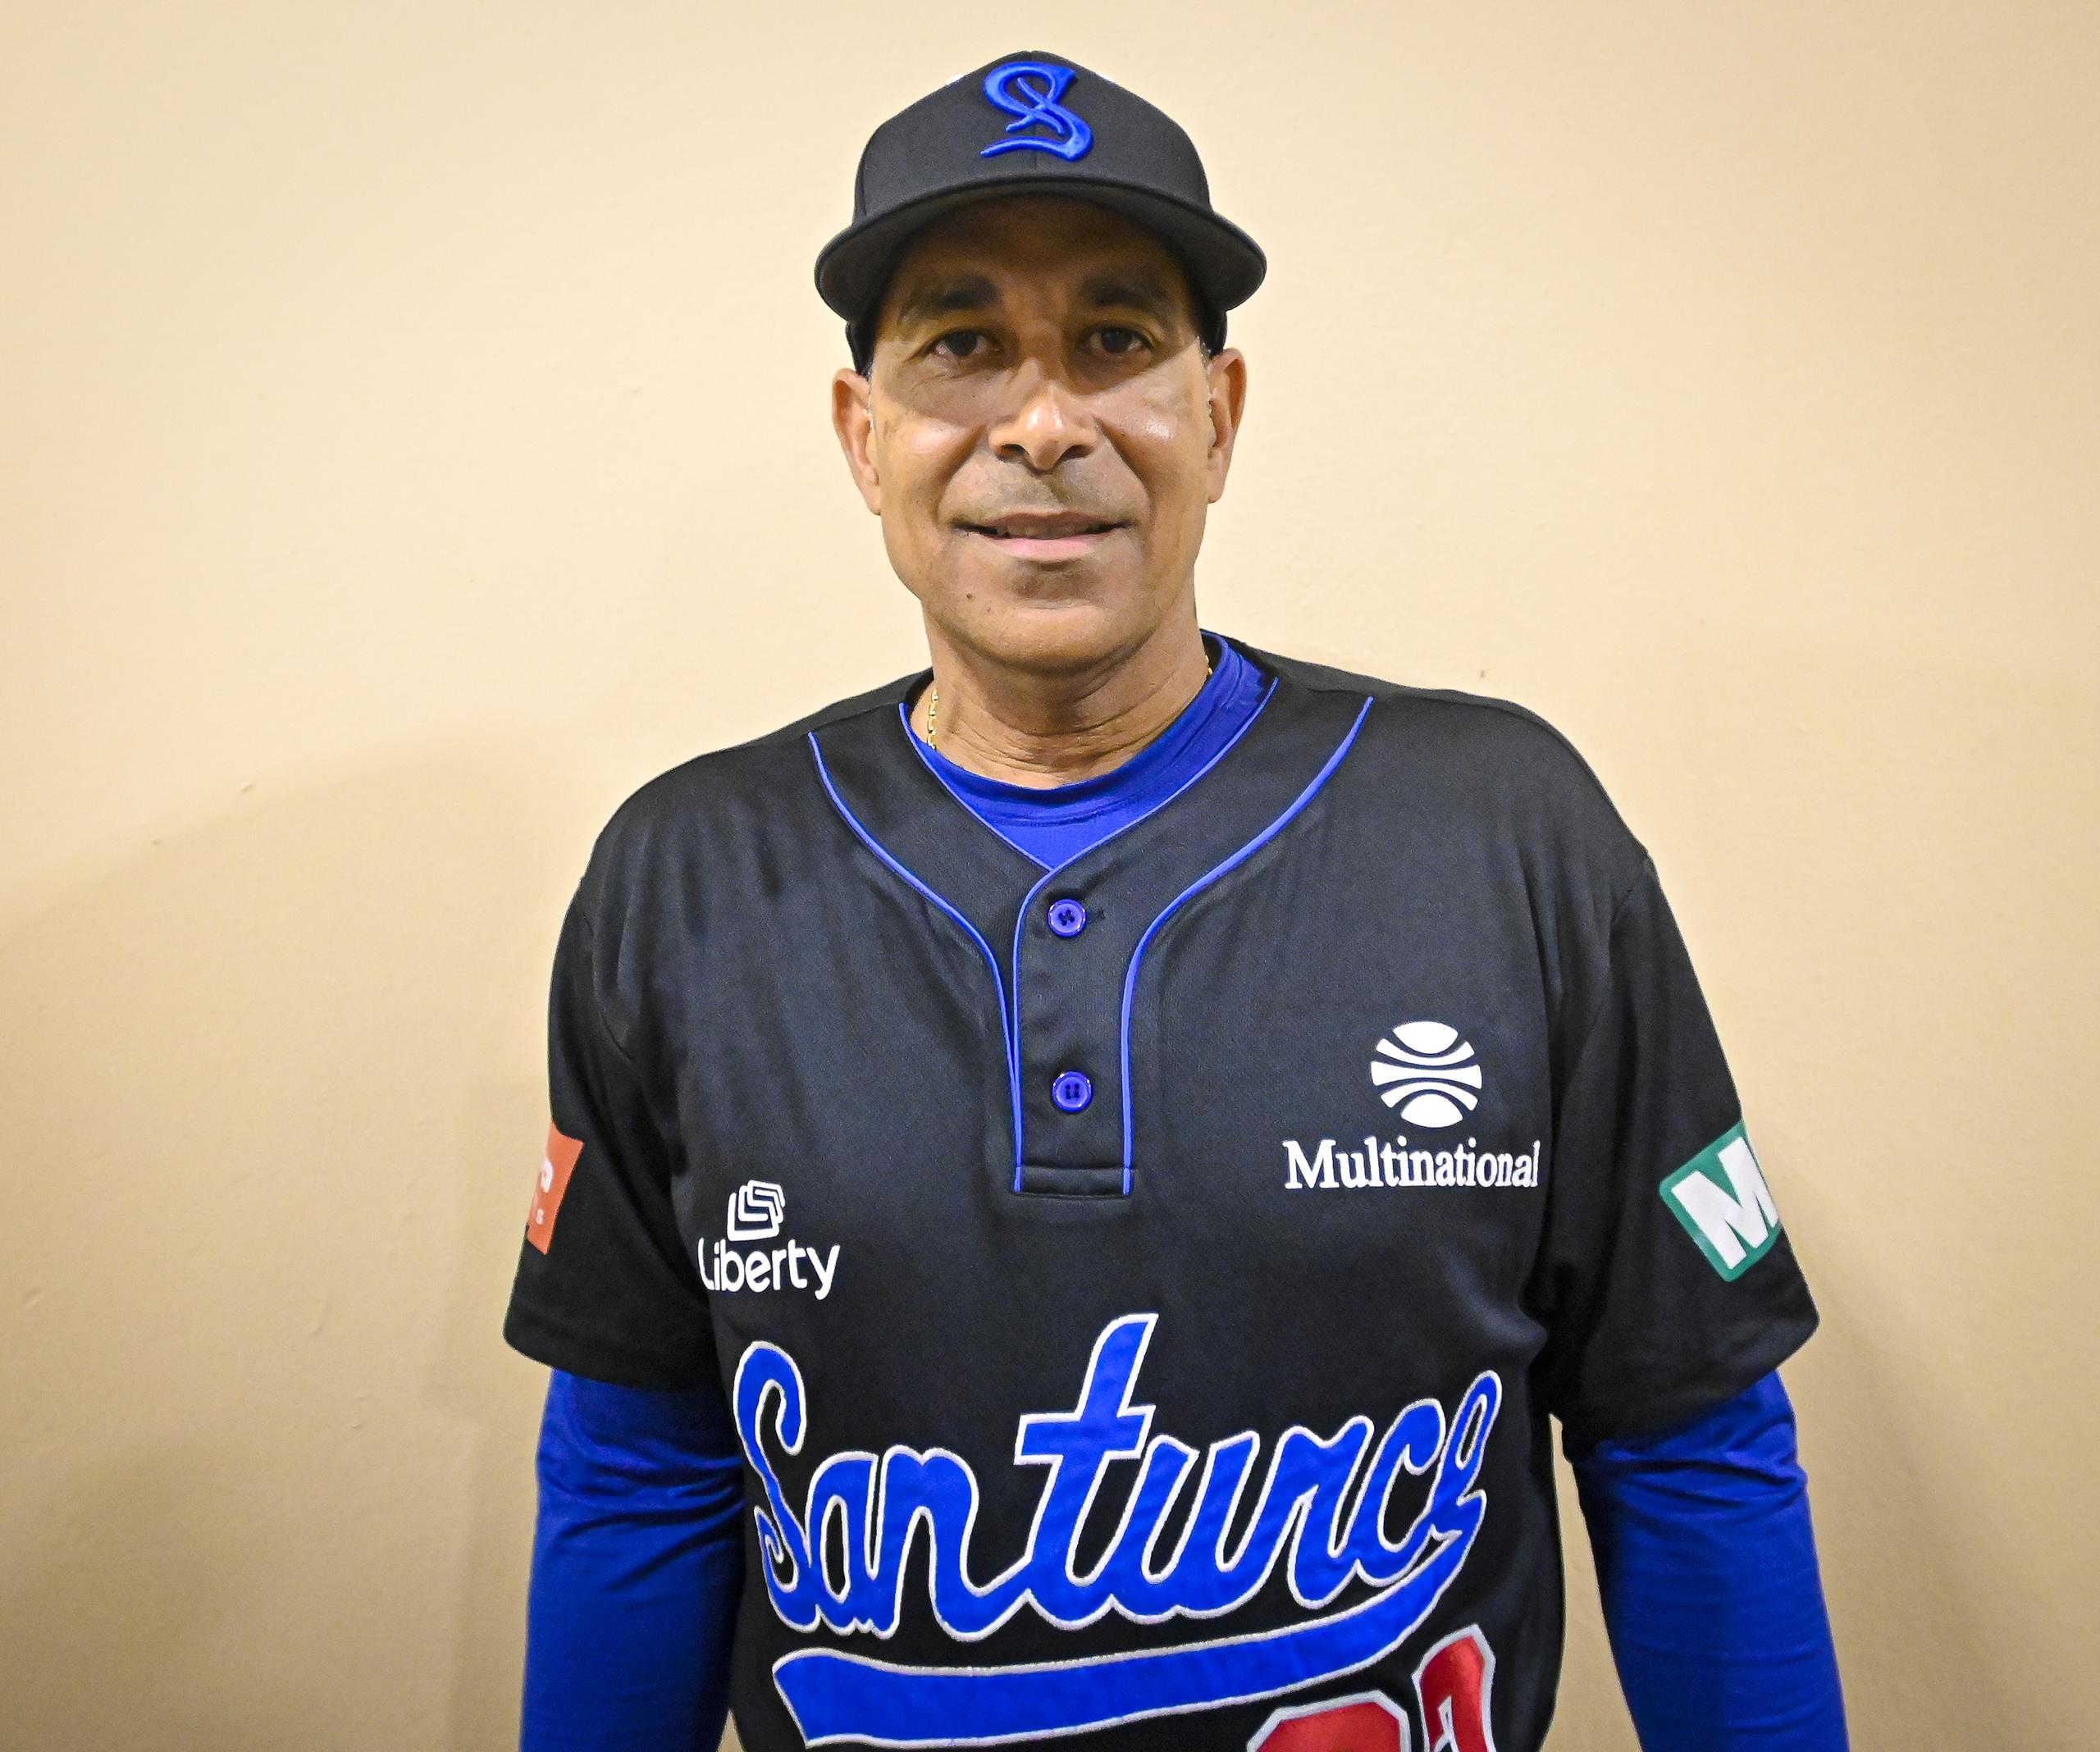 El nuevo dirigente de Santurce, José 'Pito' Hernández, sustituye a Nick Ortiz. Es el tercer dirigente de Santurce en la temporada.

Foto Miguel Rodríguez